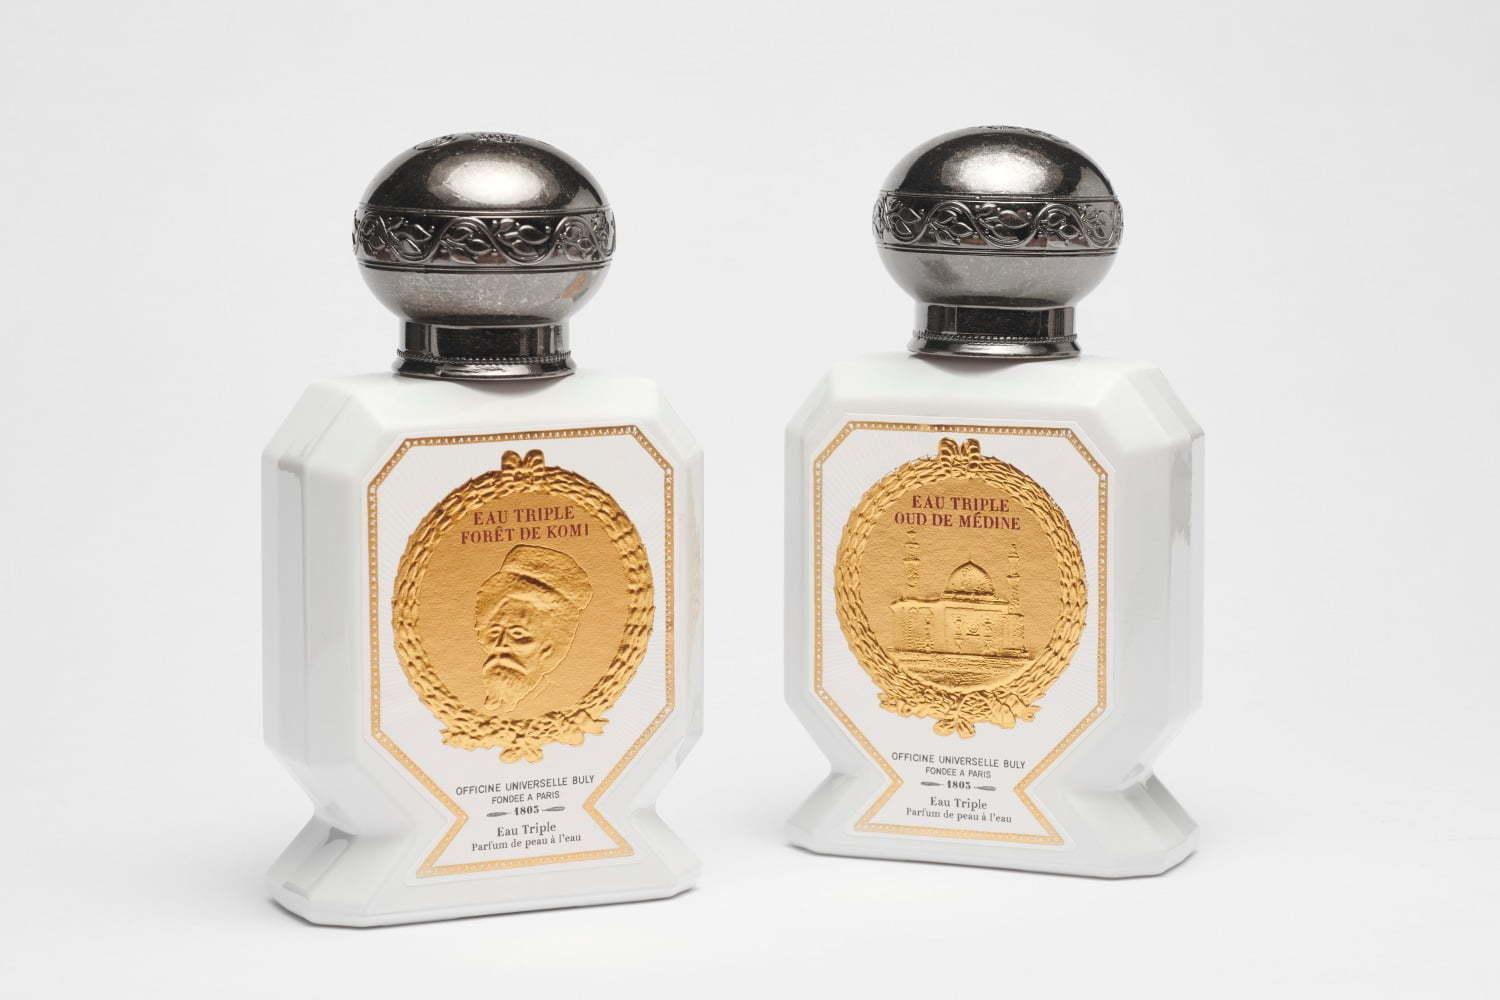 オフィシーヌ・ユニヴェルセル・ビュリーから新作香水2種、香りで“異国のノスタルジー”を感じて 